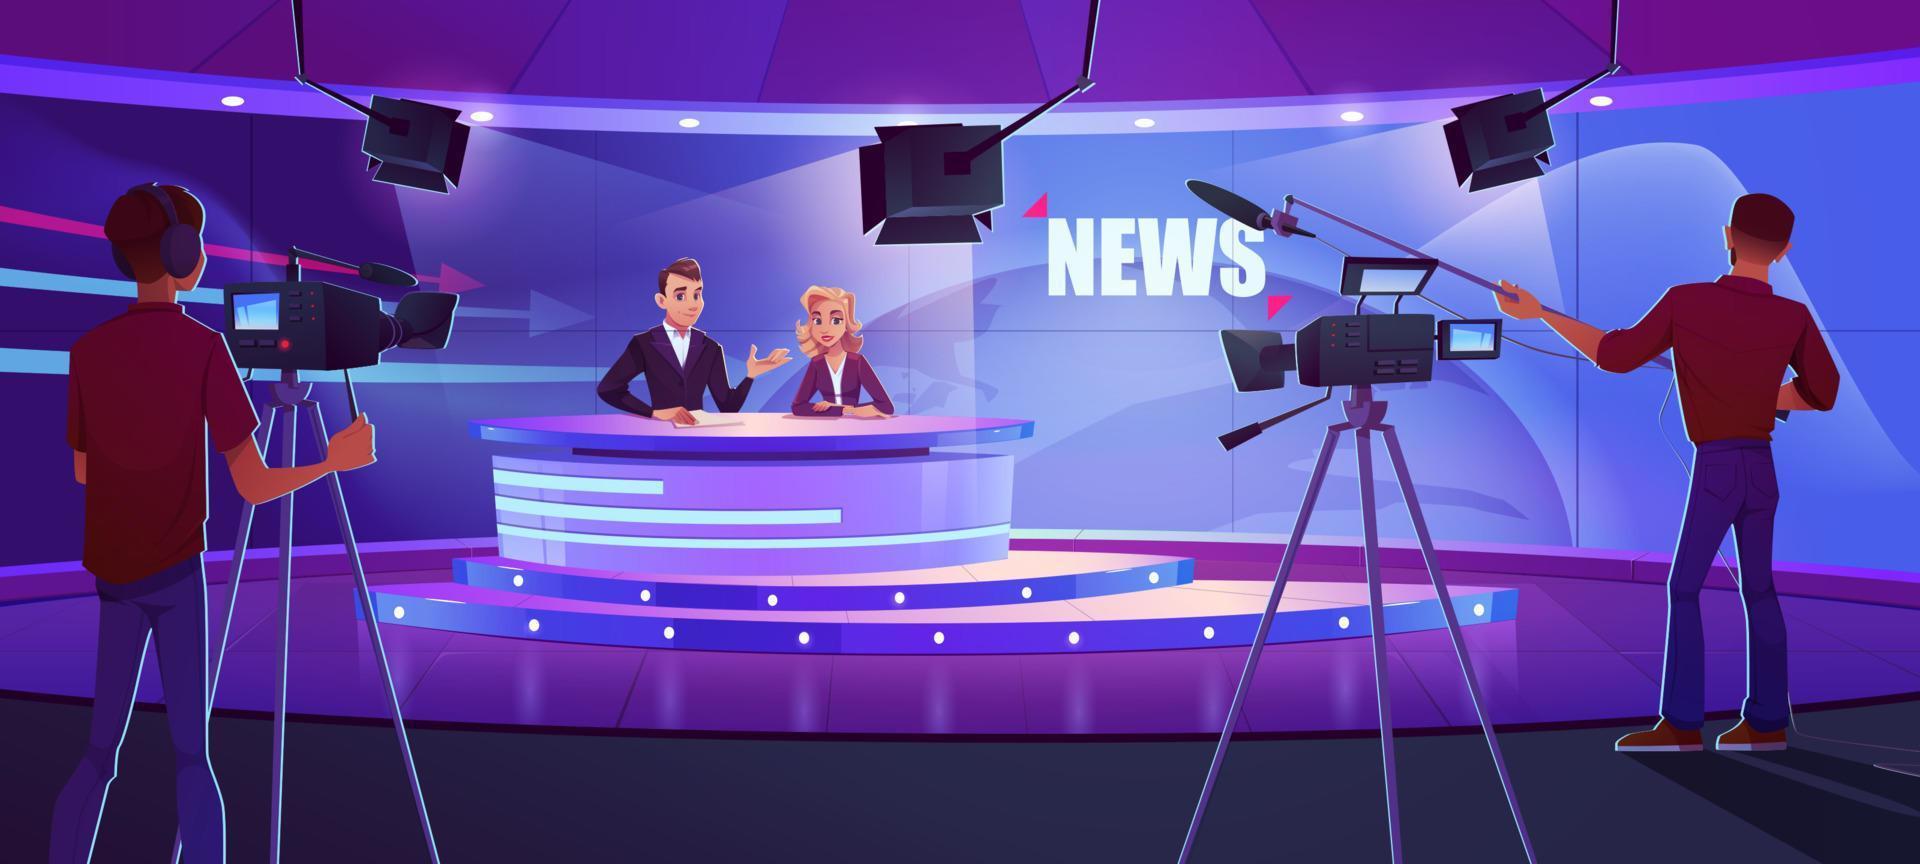 presentadores de televisión que transmiten noticias en un estudio moderno vector